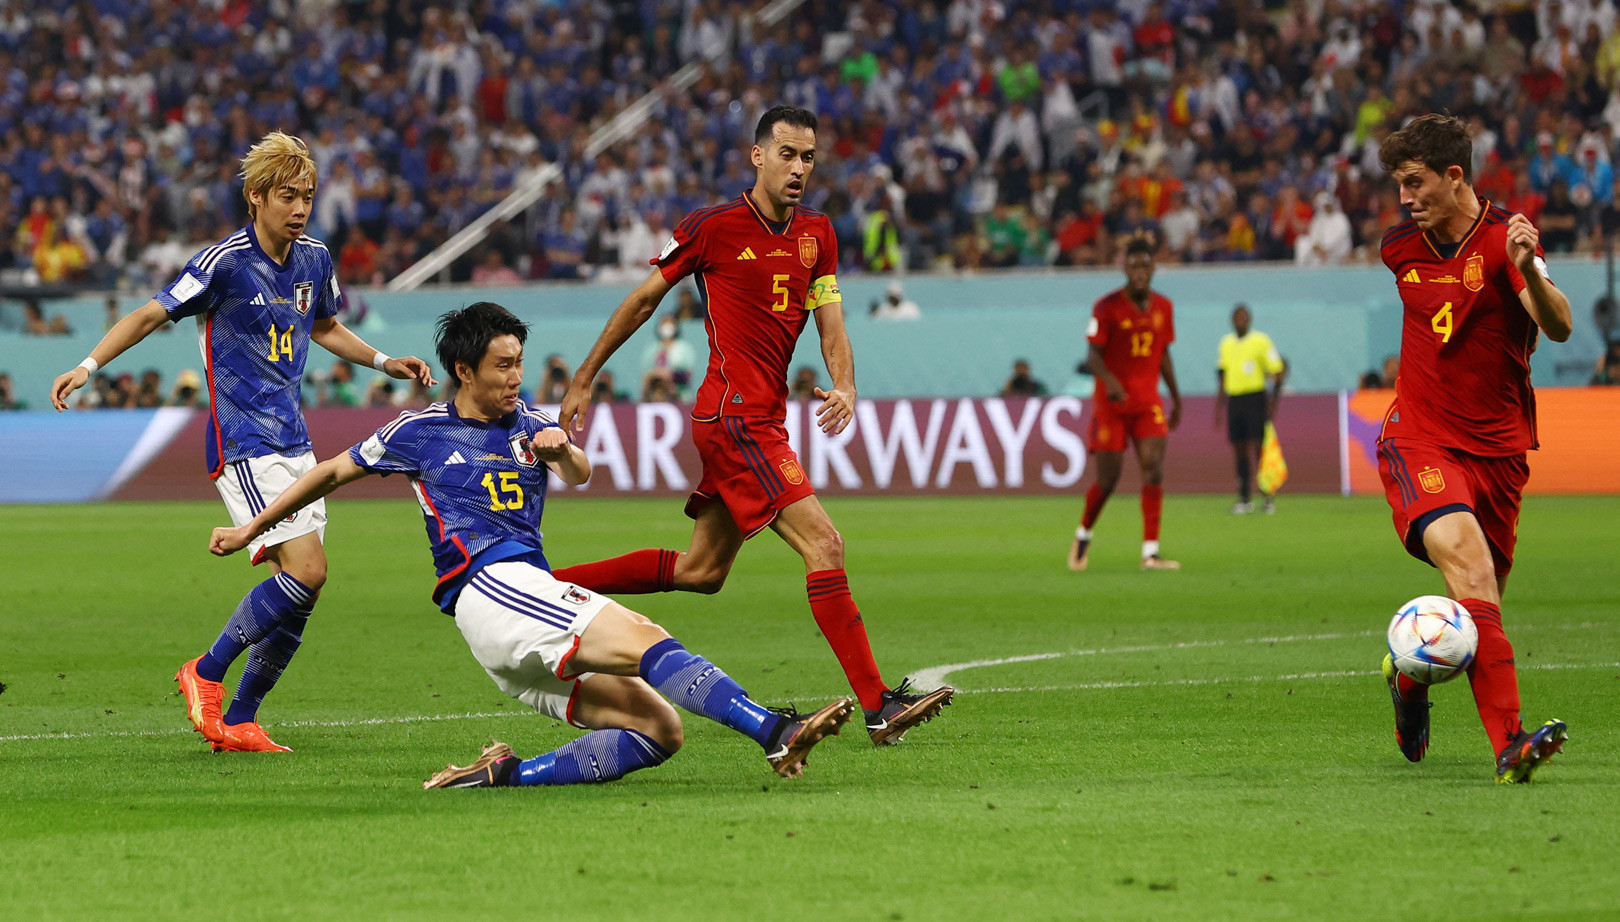 Nhật Bản chạm trán Tây Ban Nha ở lượt trận cuối bảng E, và buộc phải thắng mới chắc chắn vé đi tiếp